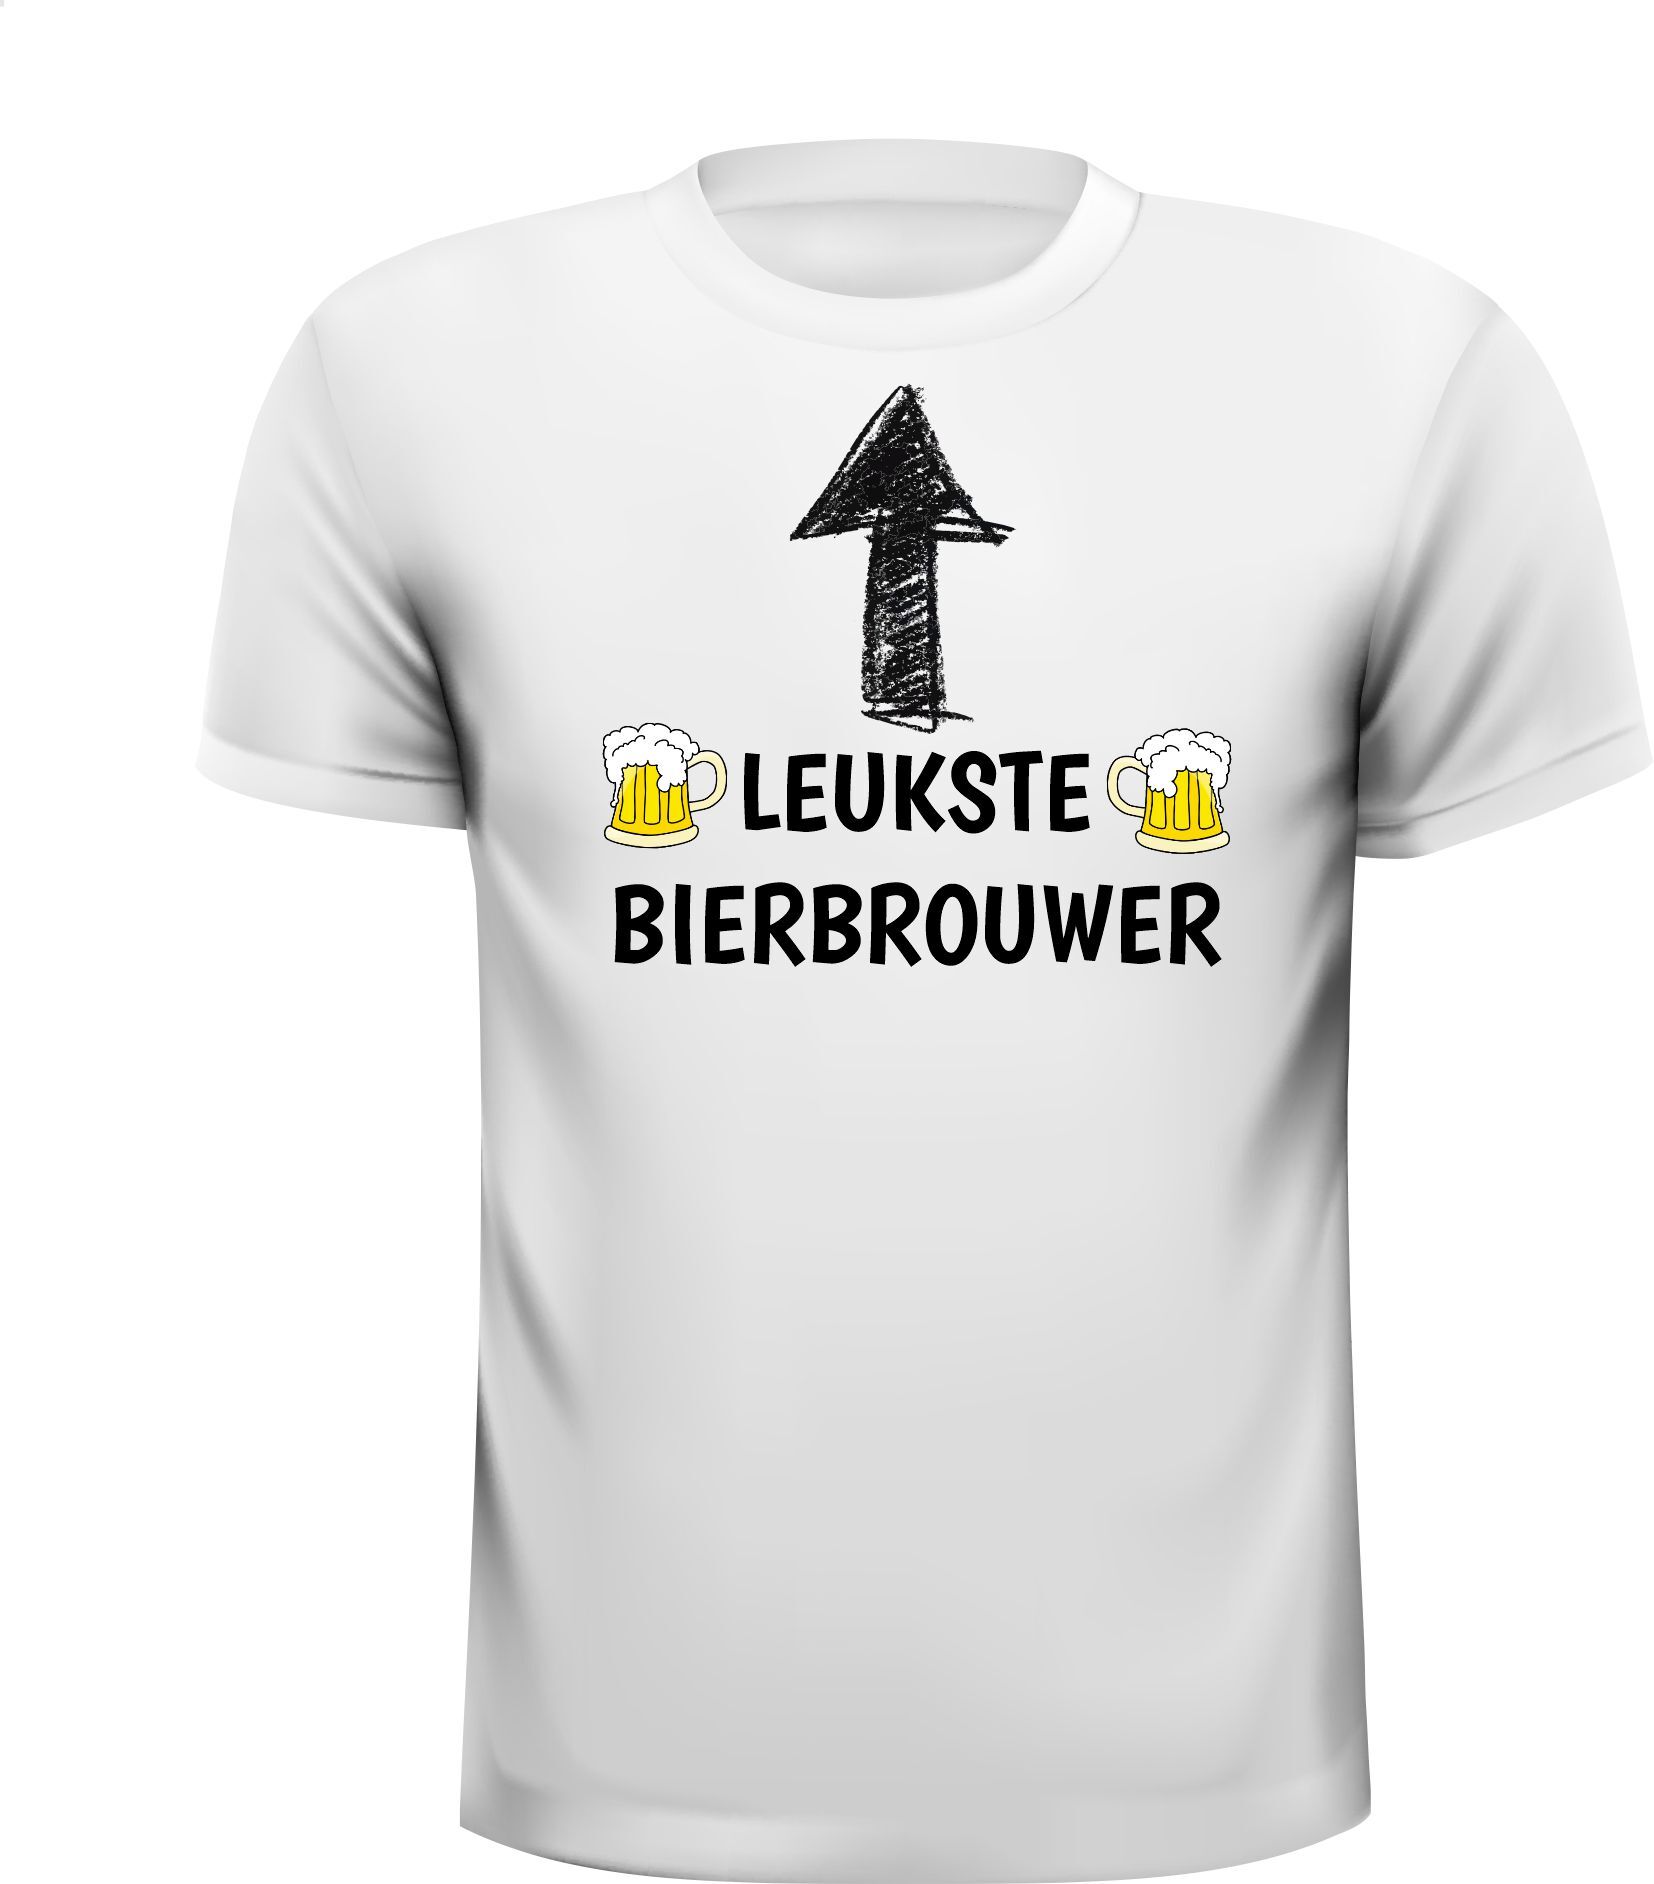 T-shirt voor de leukste Bierbrouwer